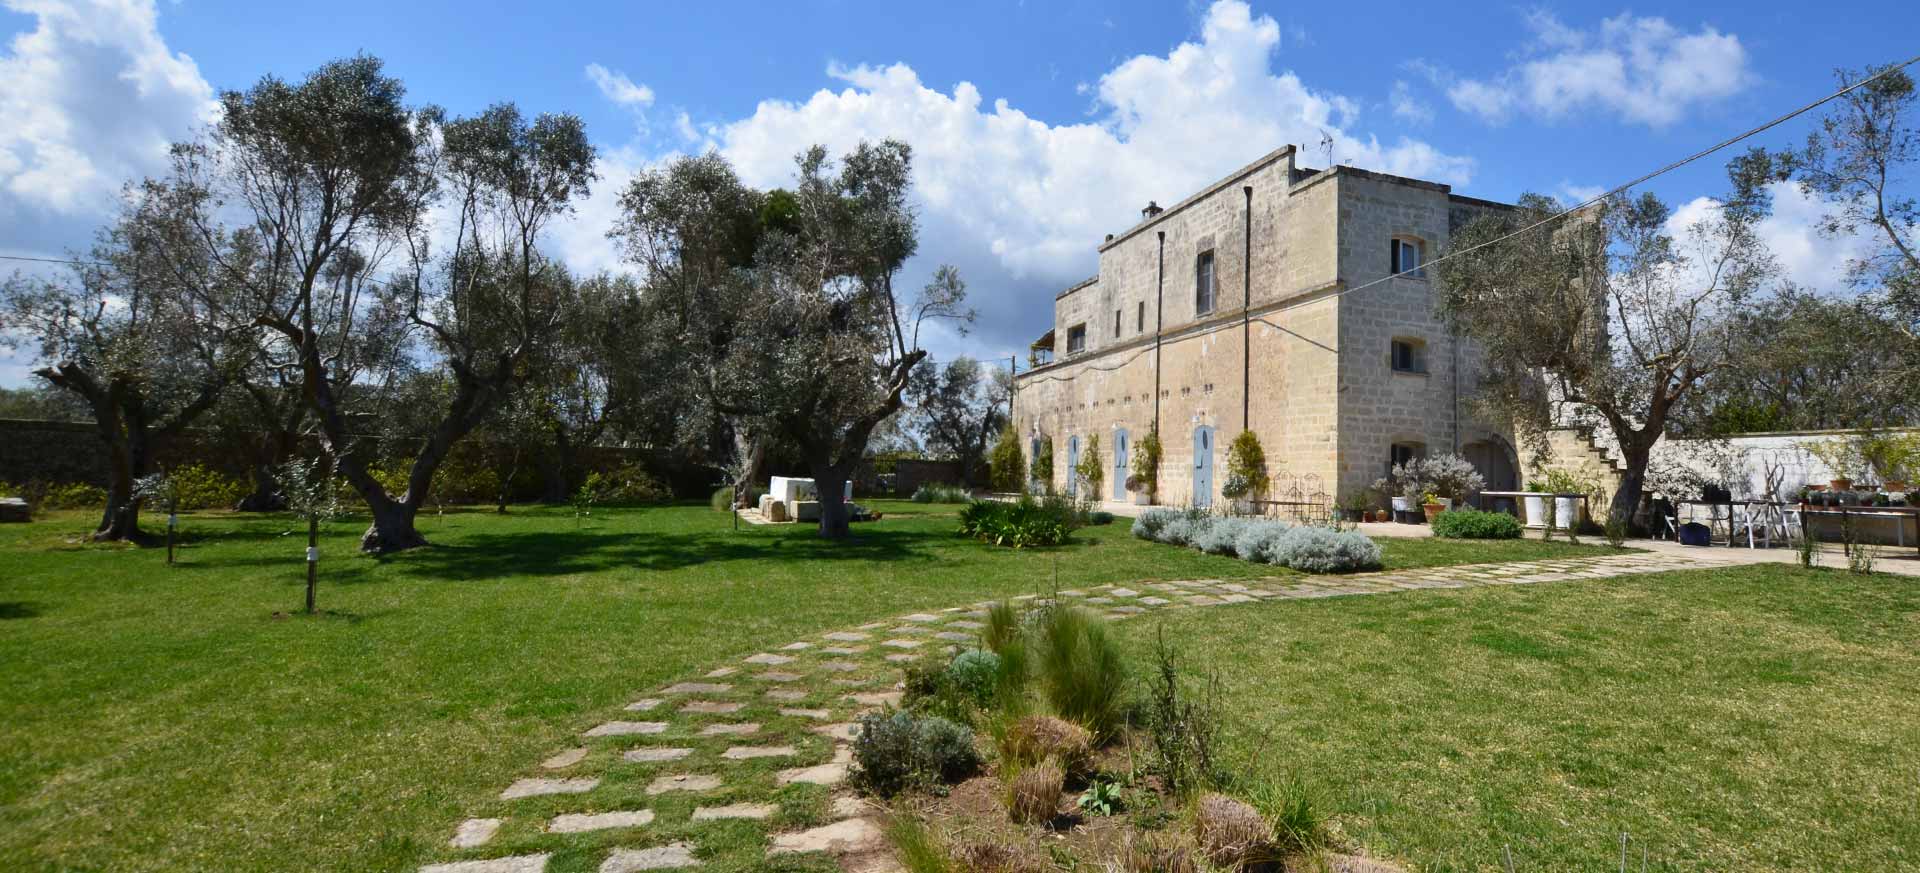 Maison d`hôte Torre dell`Orso - Lecce - 